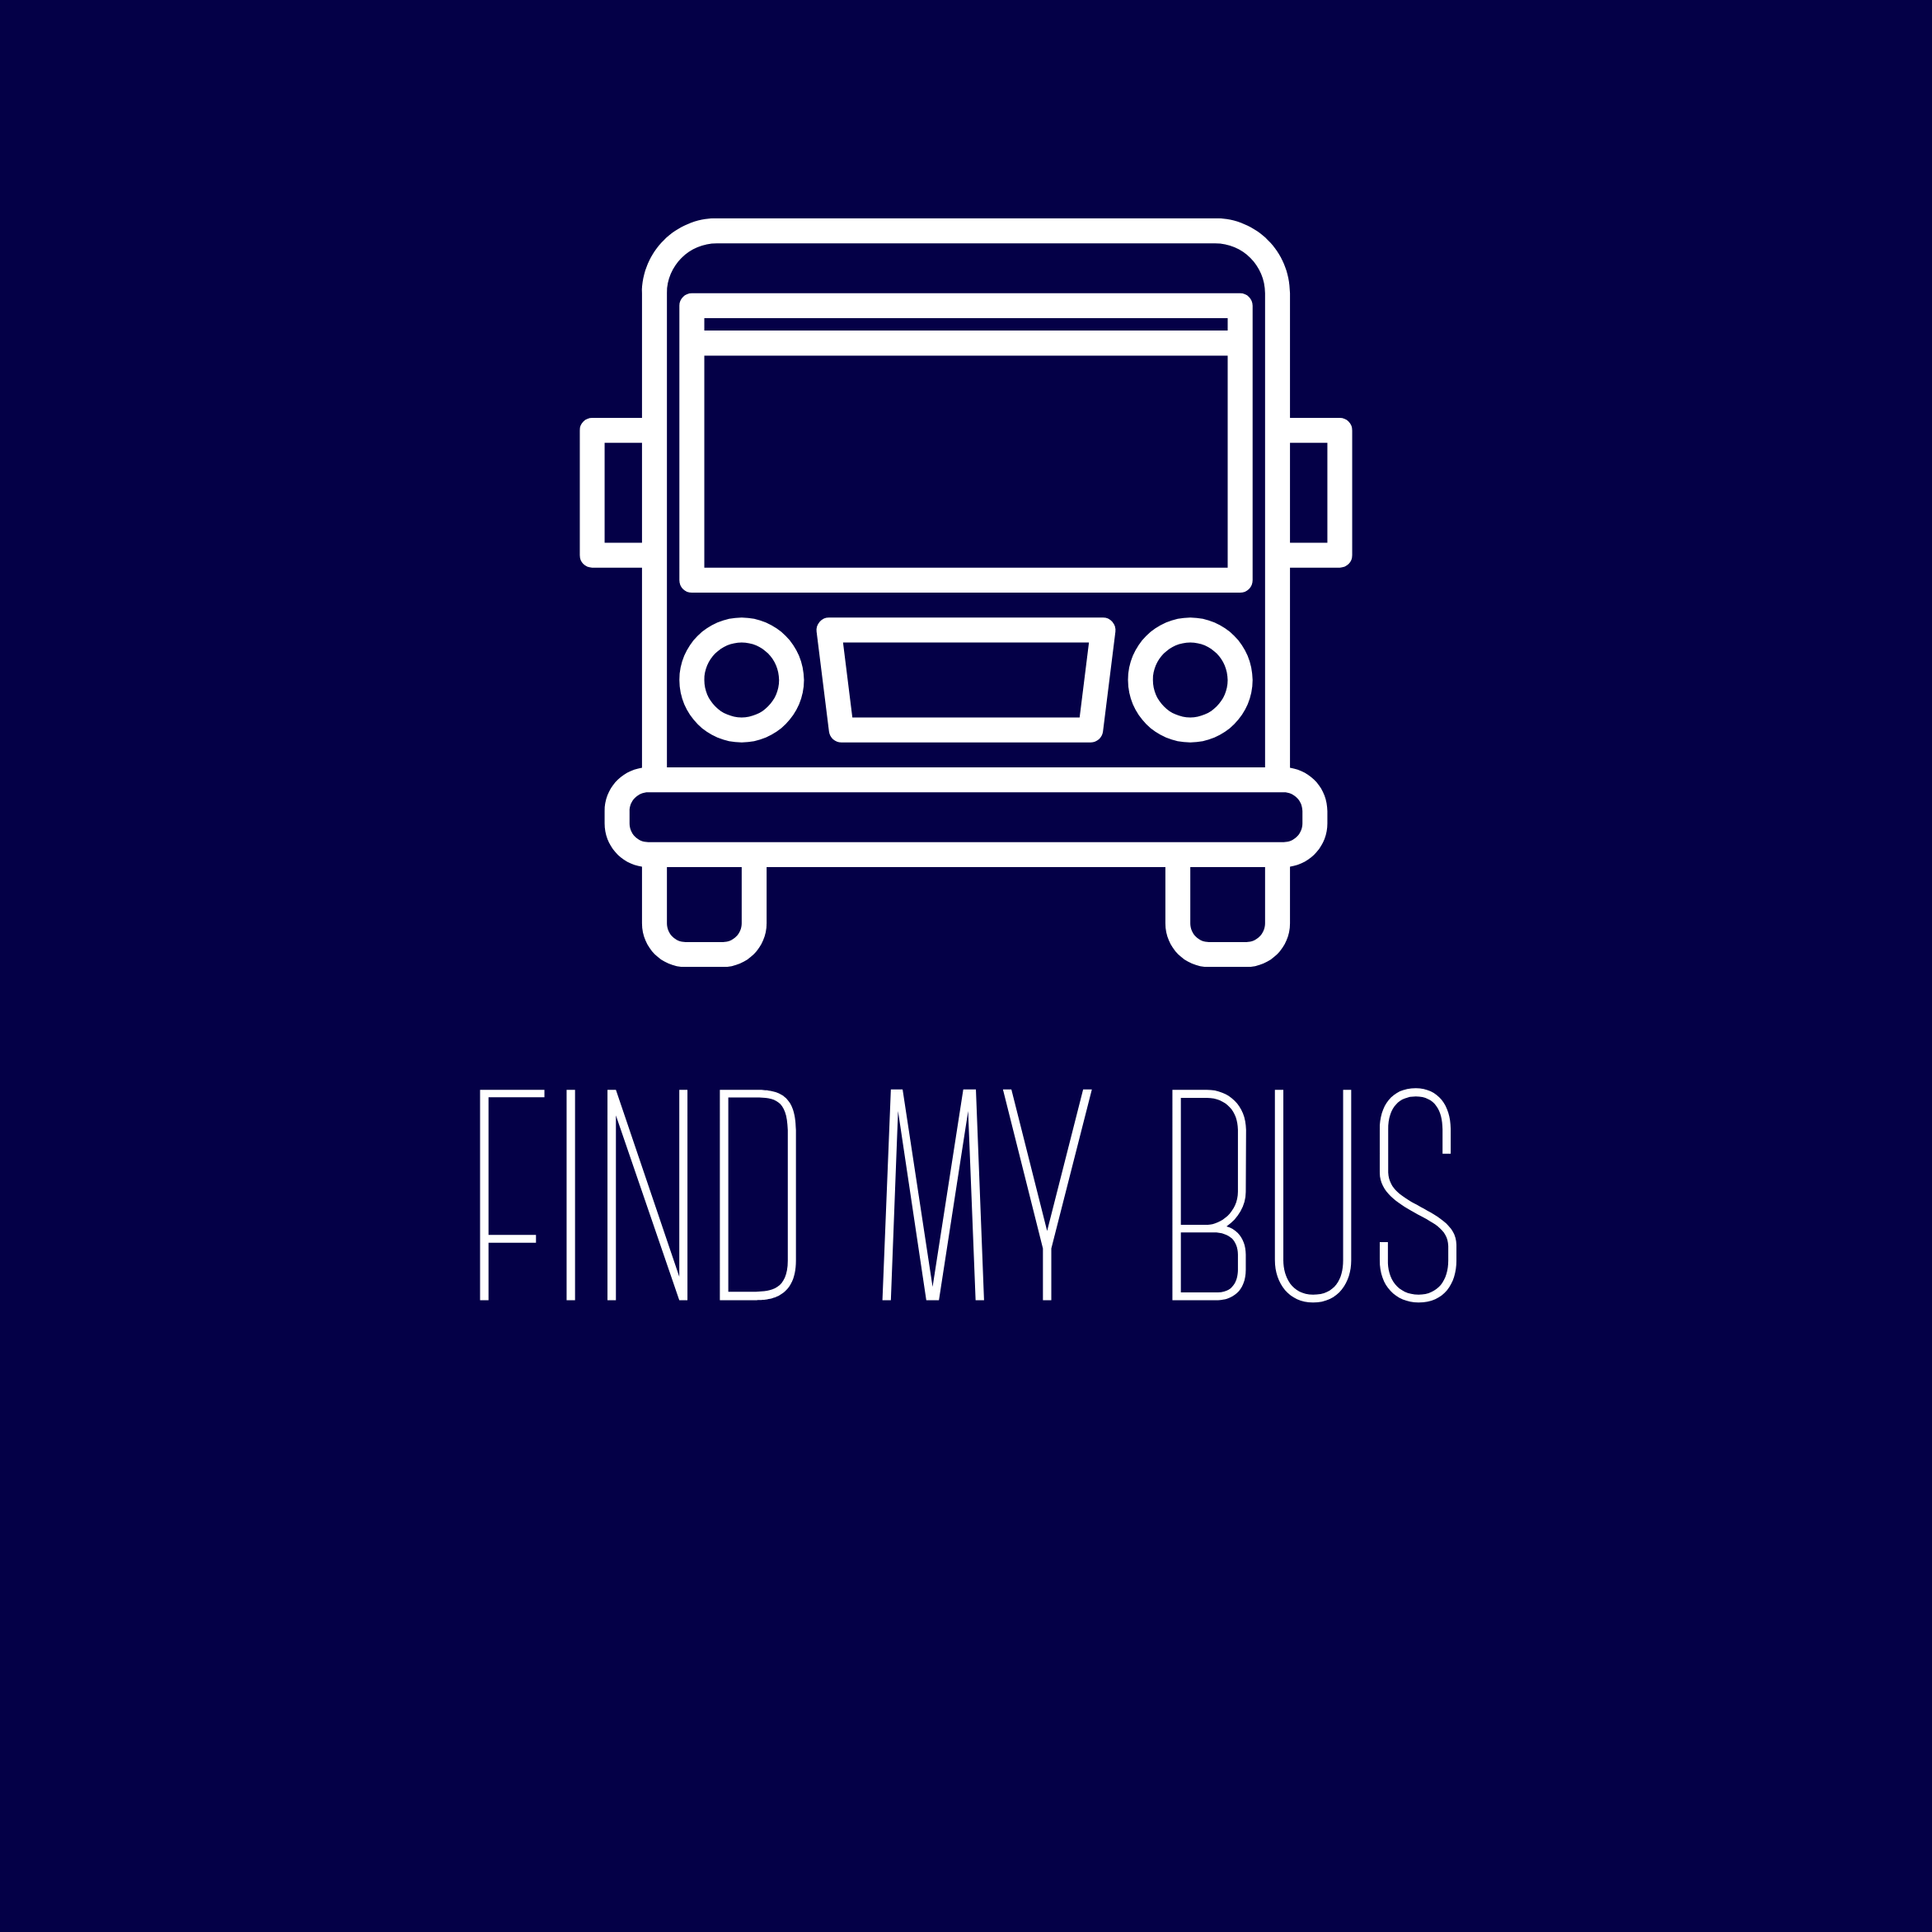 Find My Bus Information